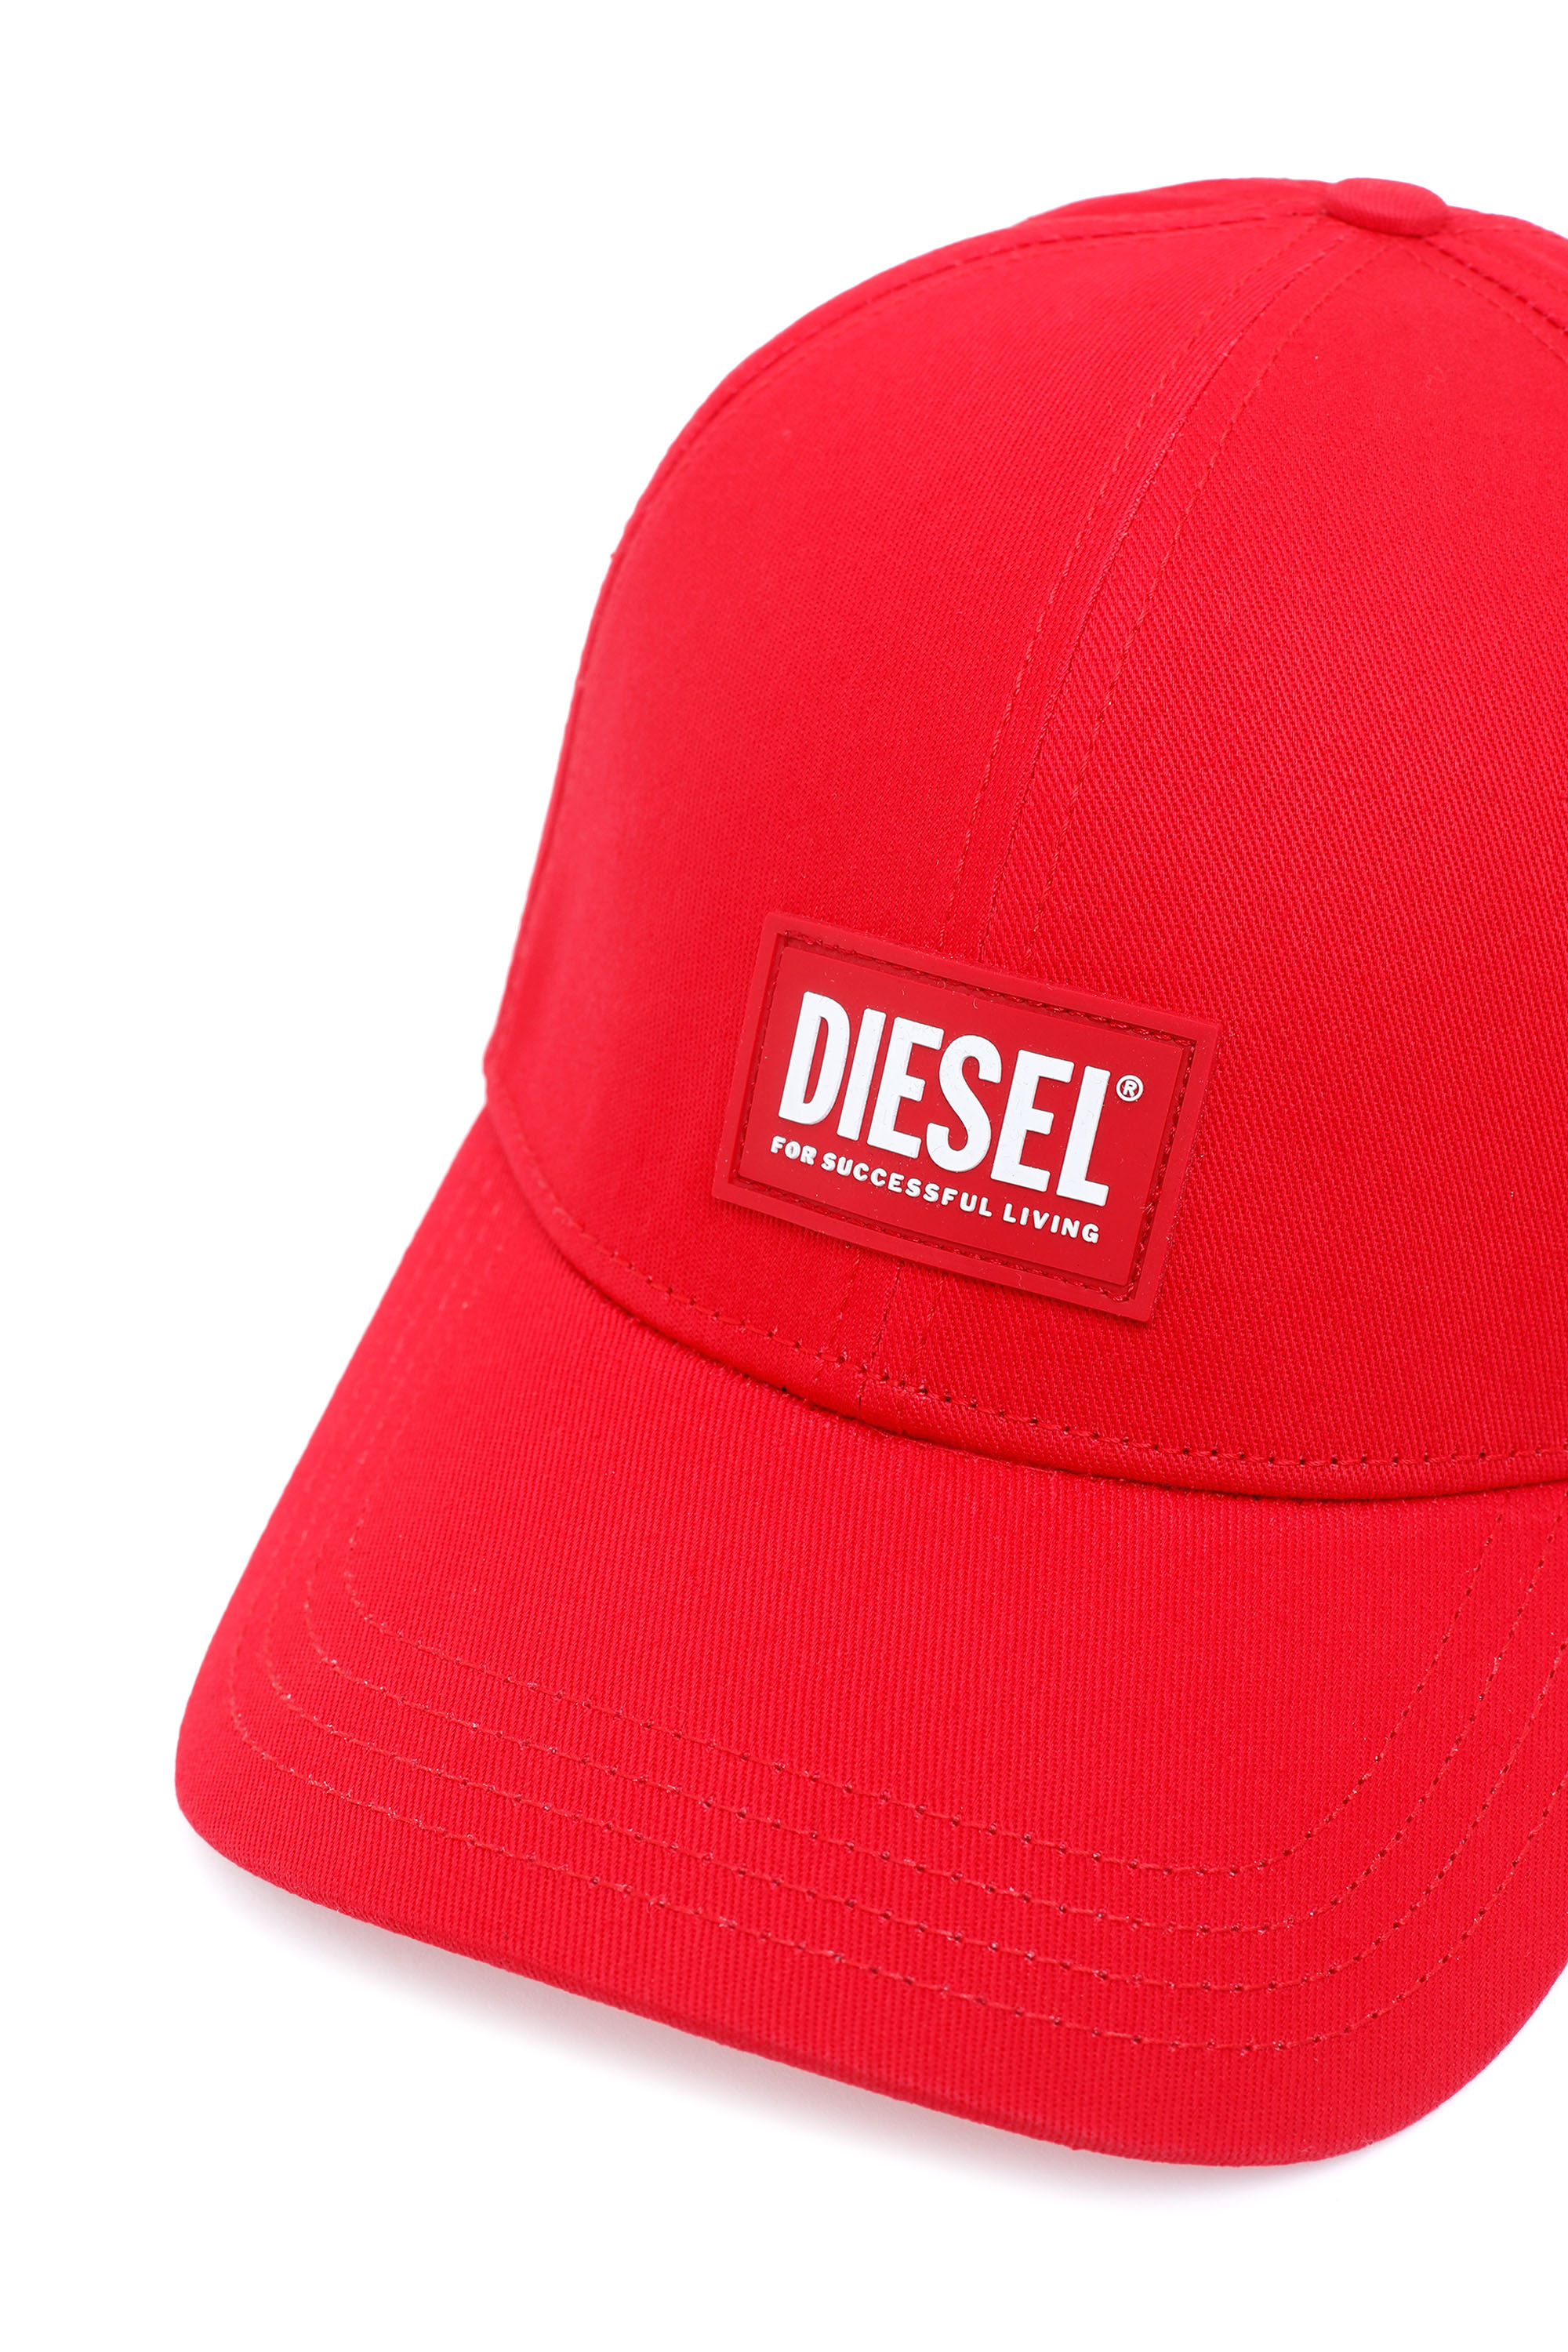 Diesel - CORRY-GUM, Rosso - Image 3